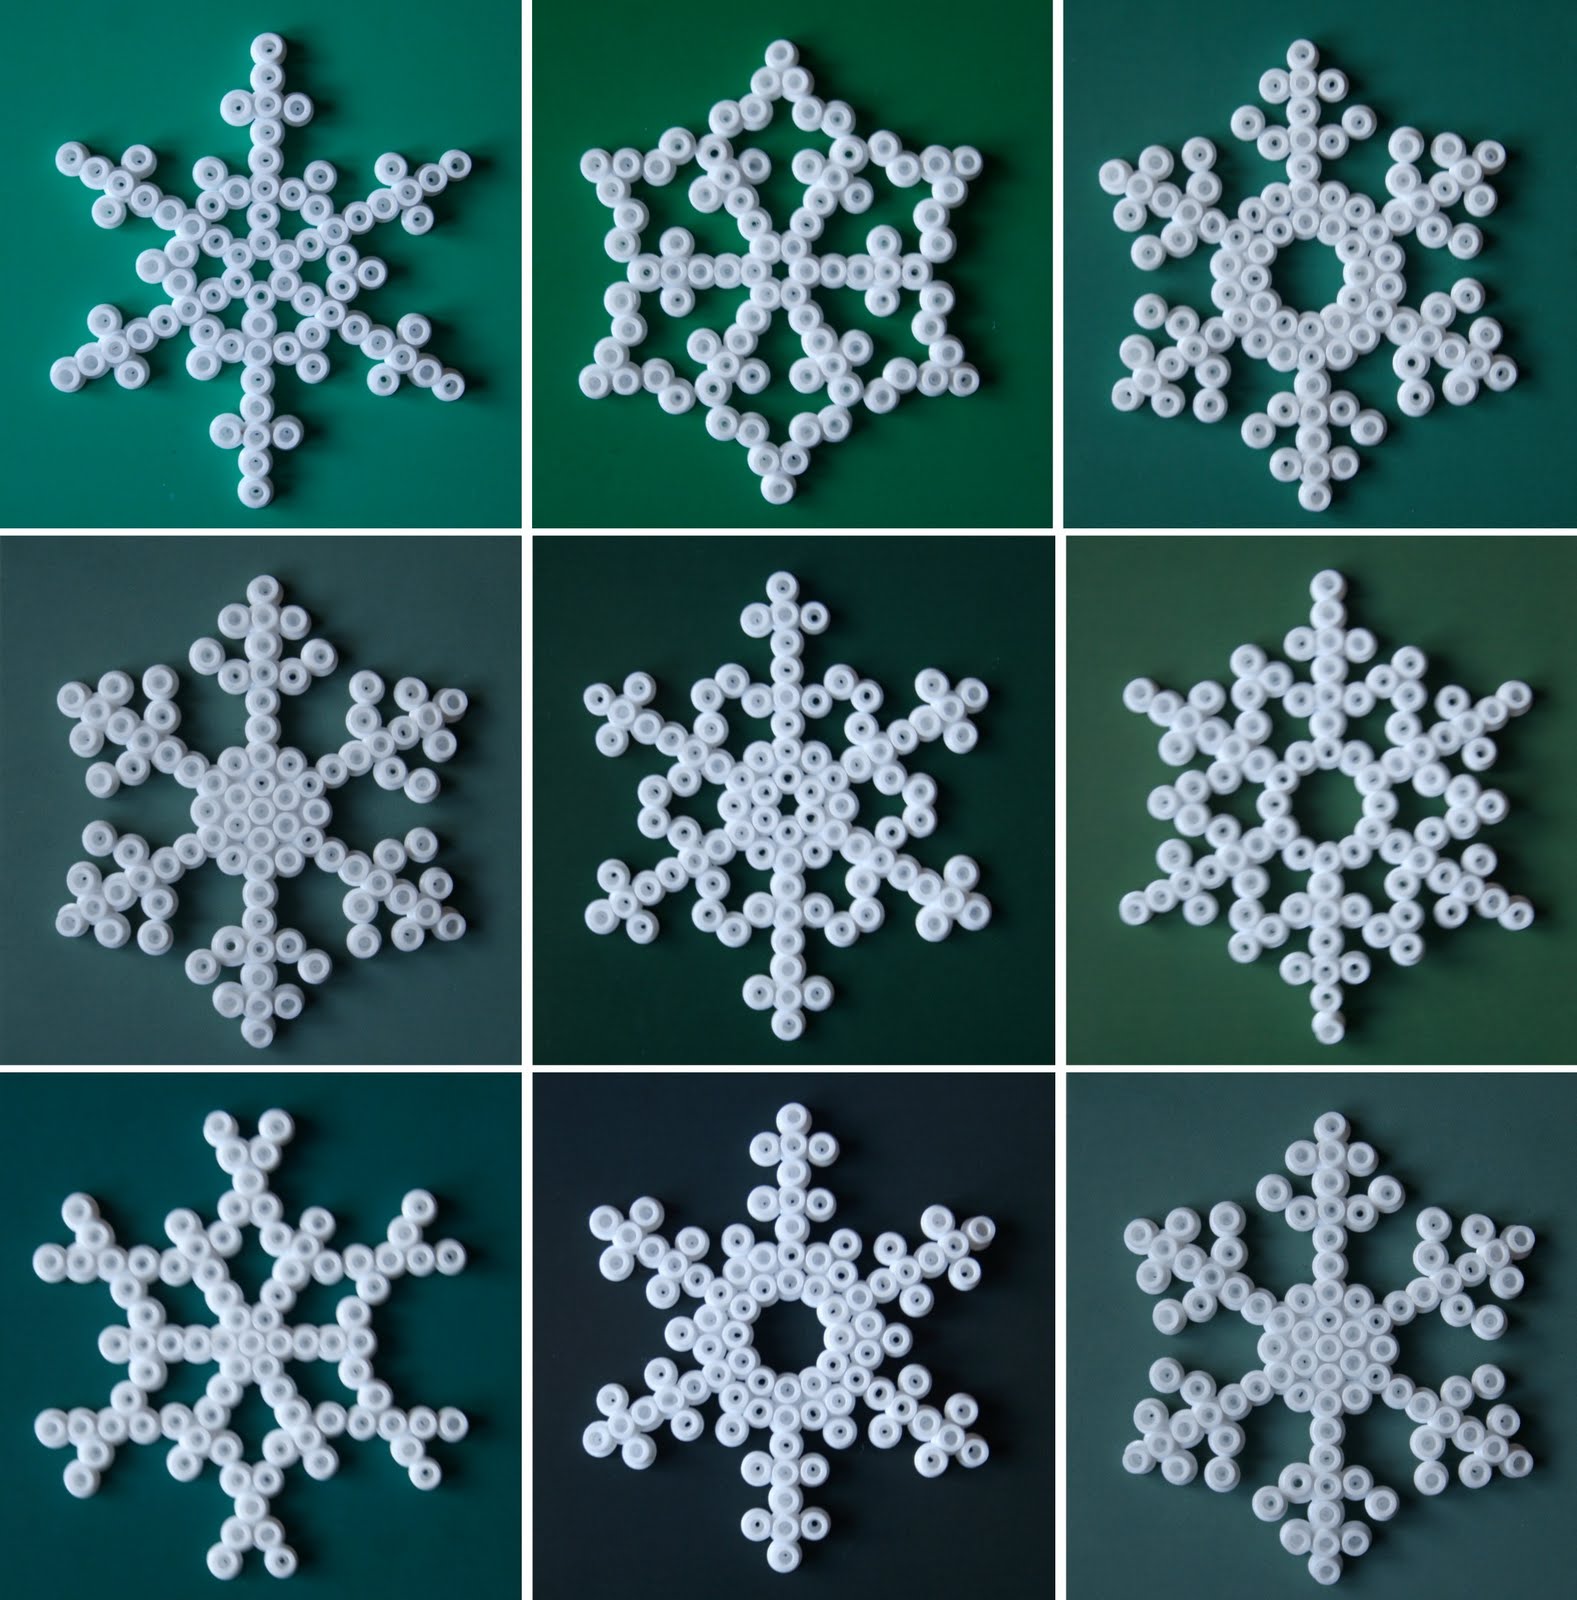 heodeza: Homemade snowflakes